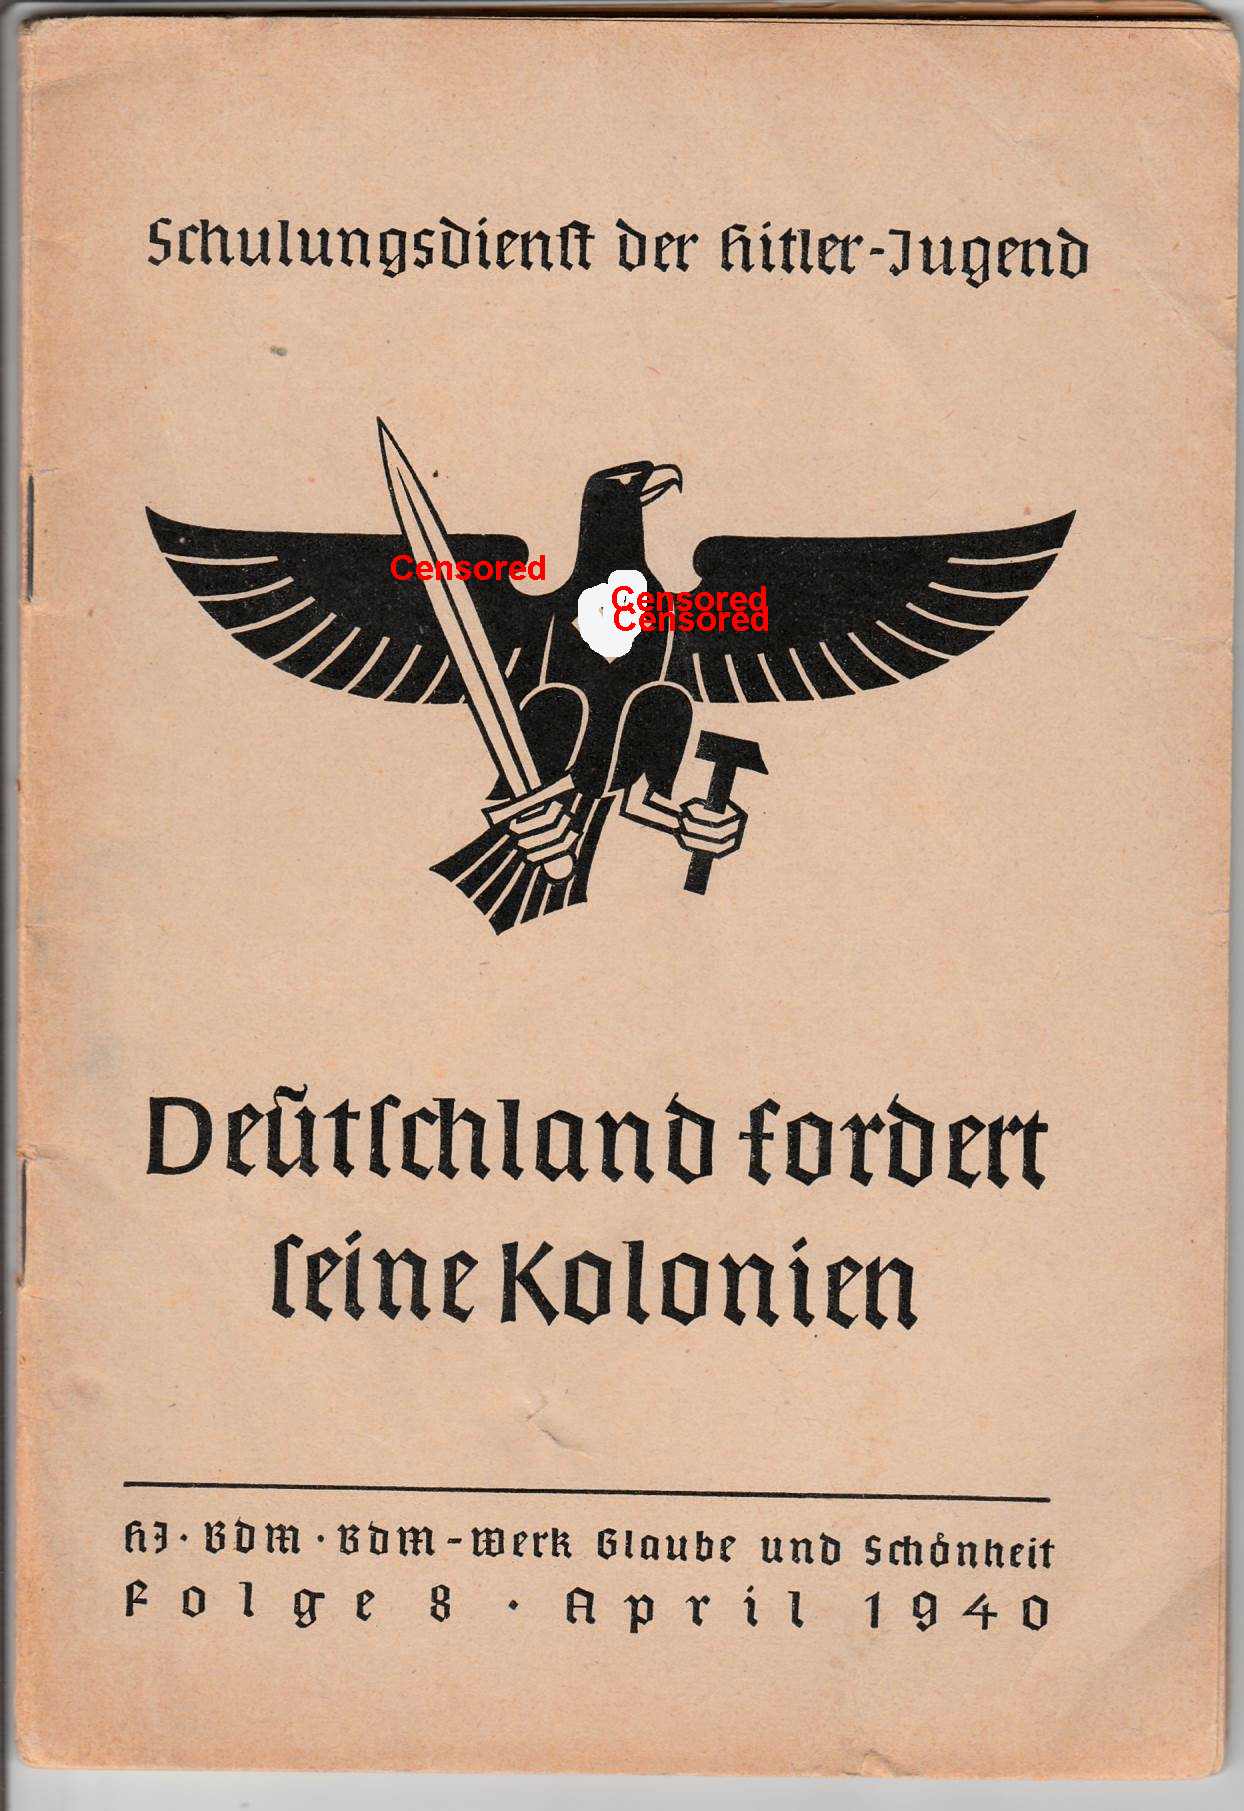 "Schulungsdienst der Hitler-Jugend",1940